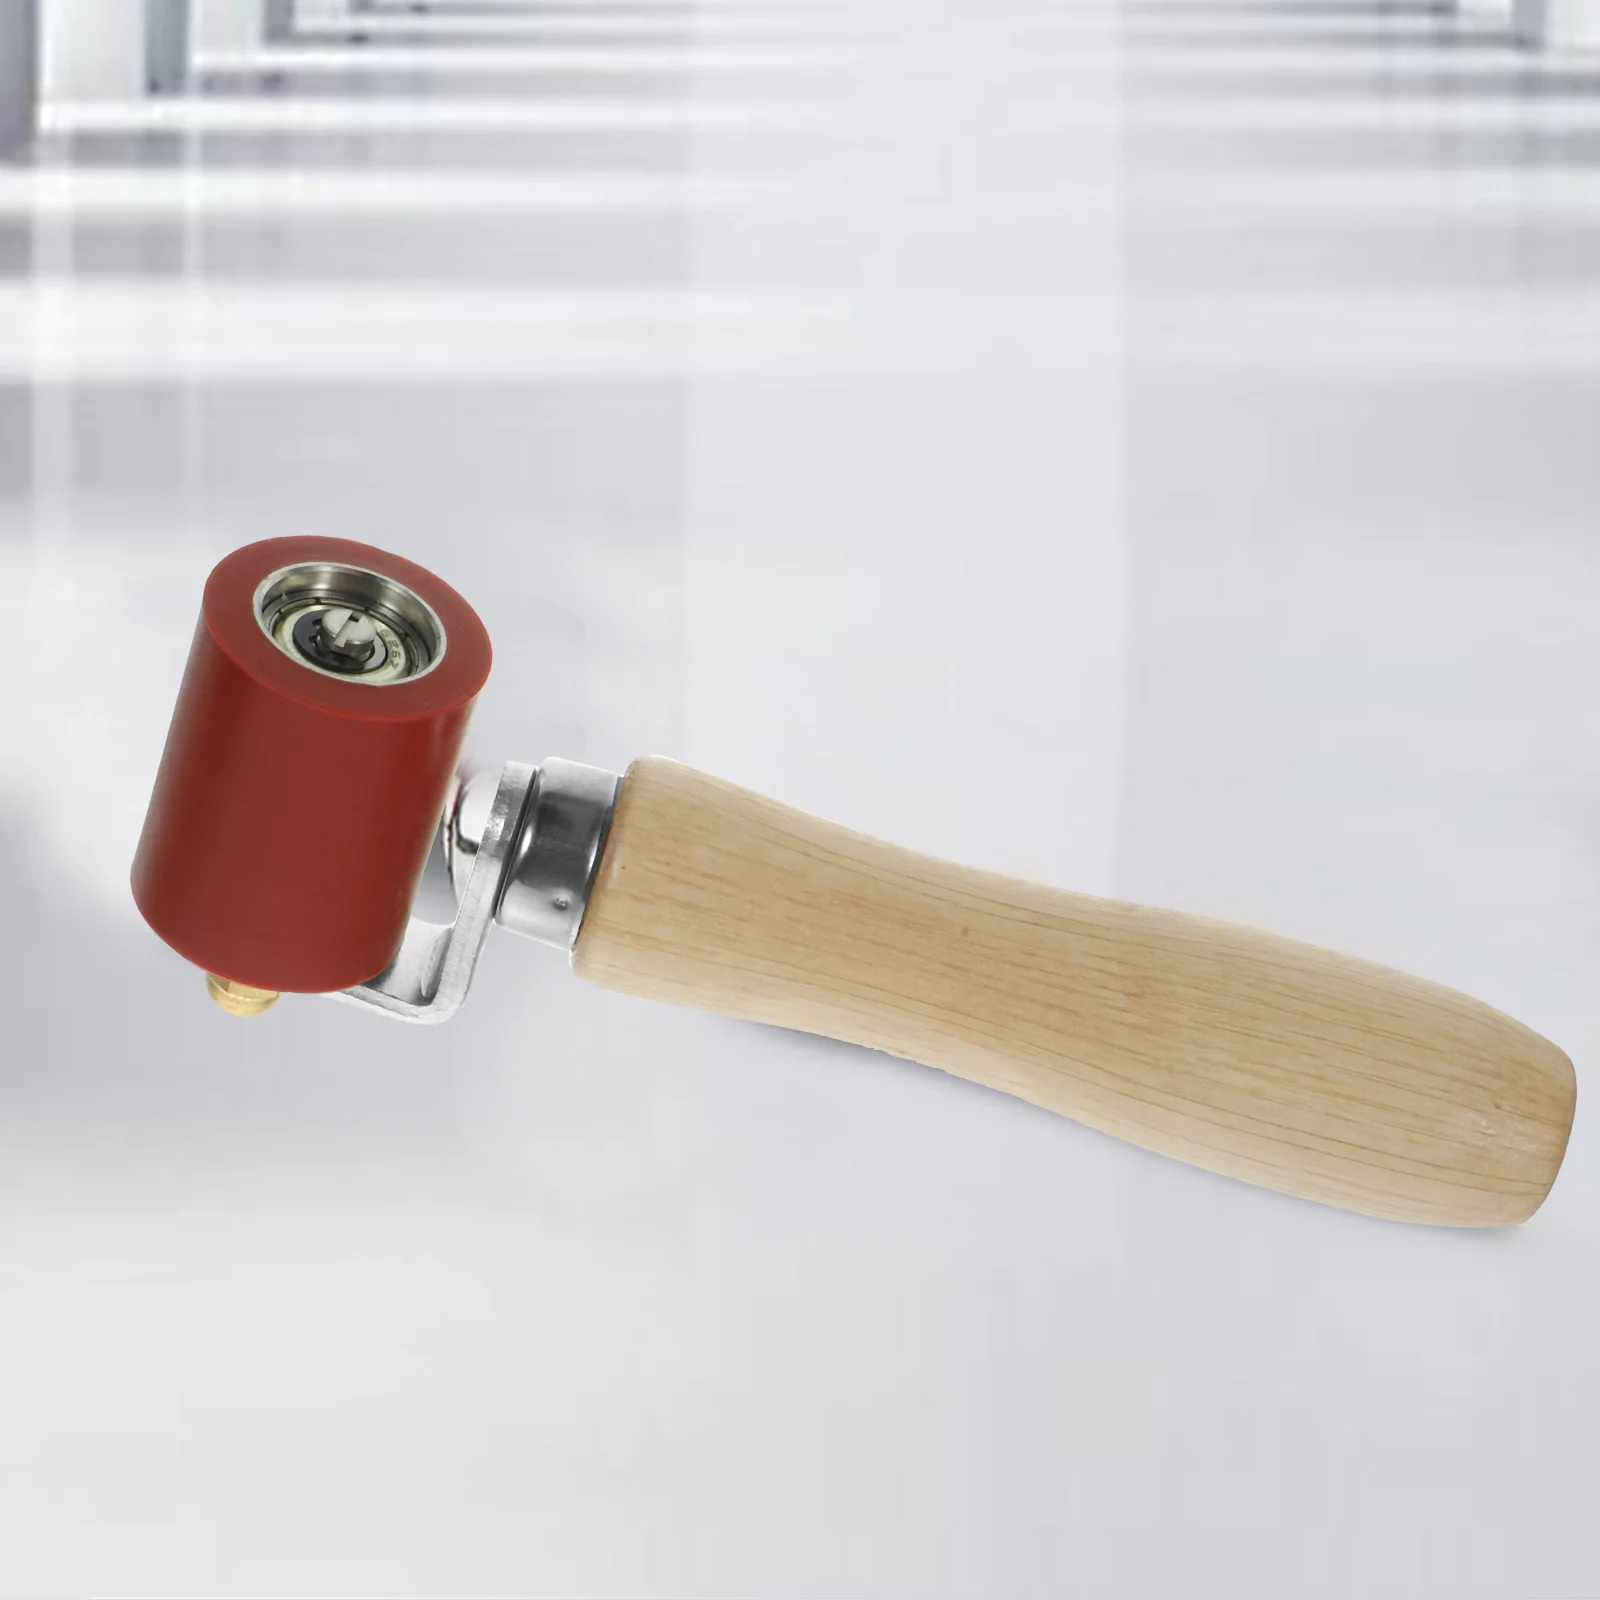 

Силиконовый ролик с ручным прижимом для сварки швов, ПВХ, стегания, кровельные обои, инструменты, шпатлевка, резина